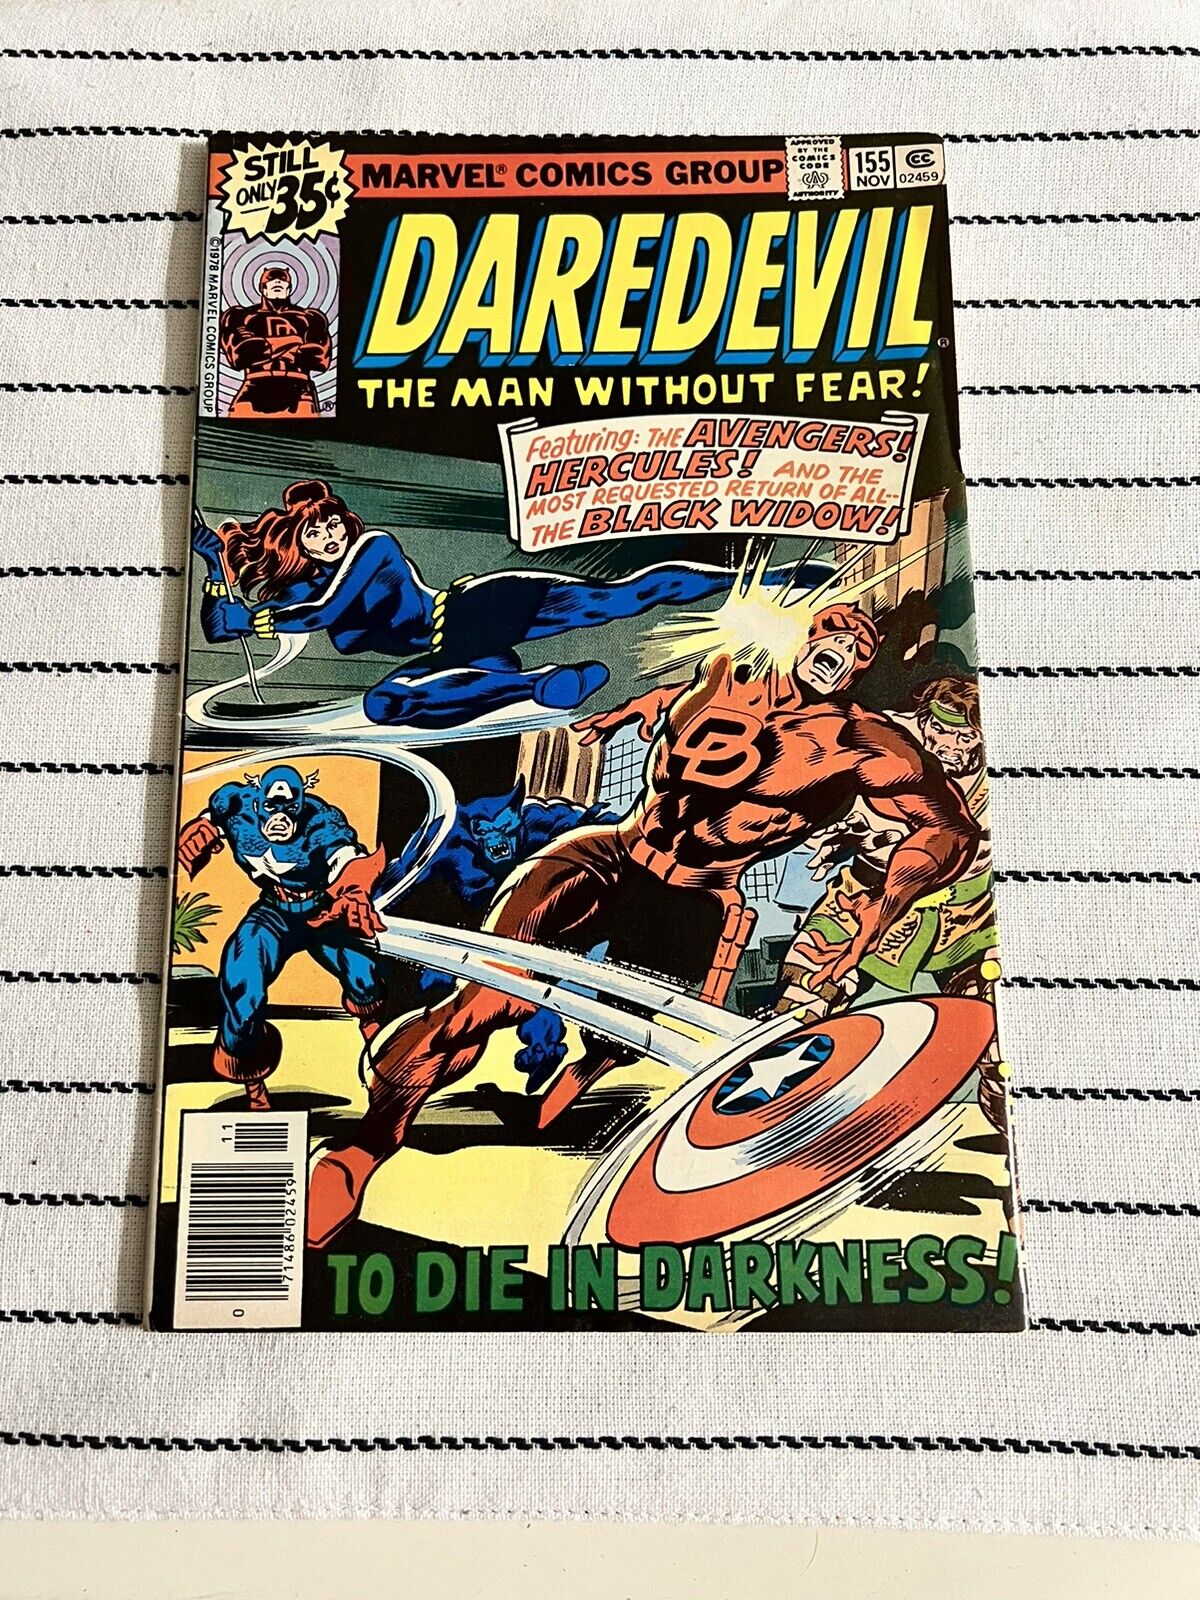 Daredevil #155 Marvel 1978